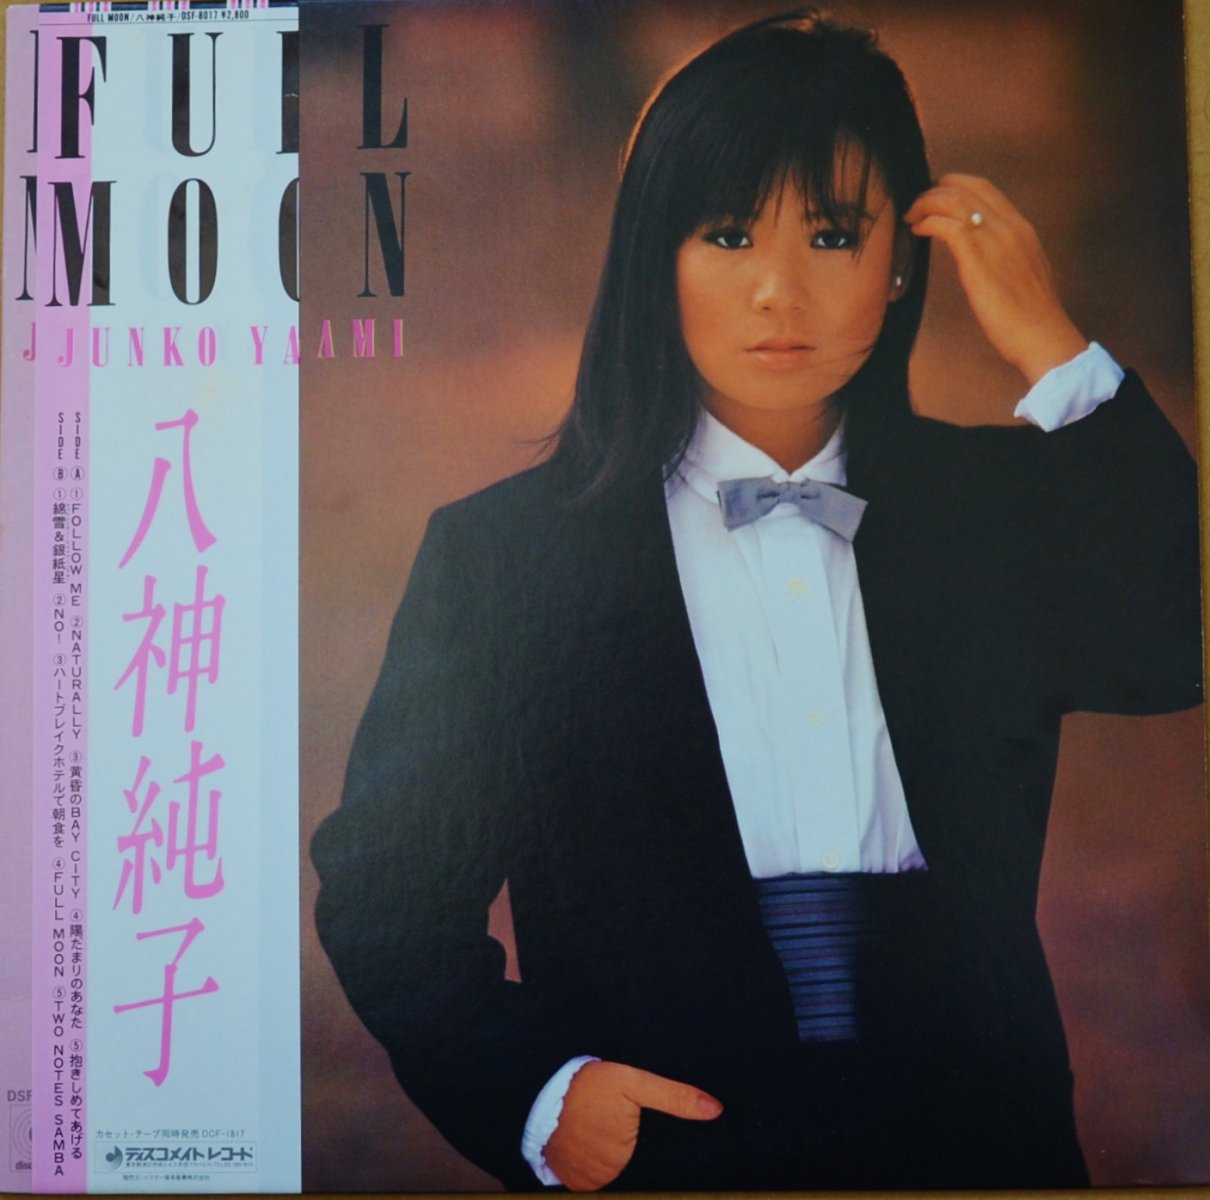 八神純子 FULL MOON フル・ムーン LP-